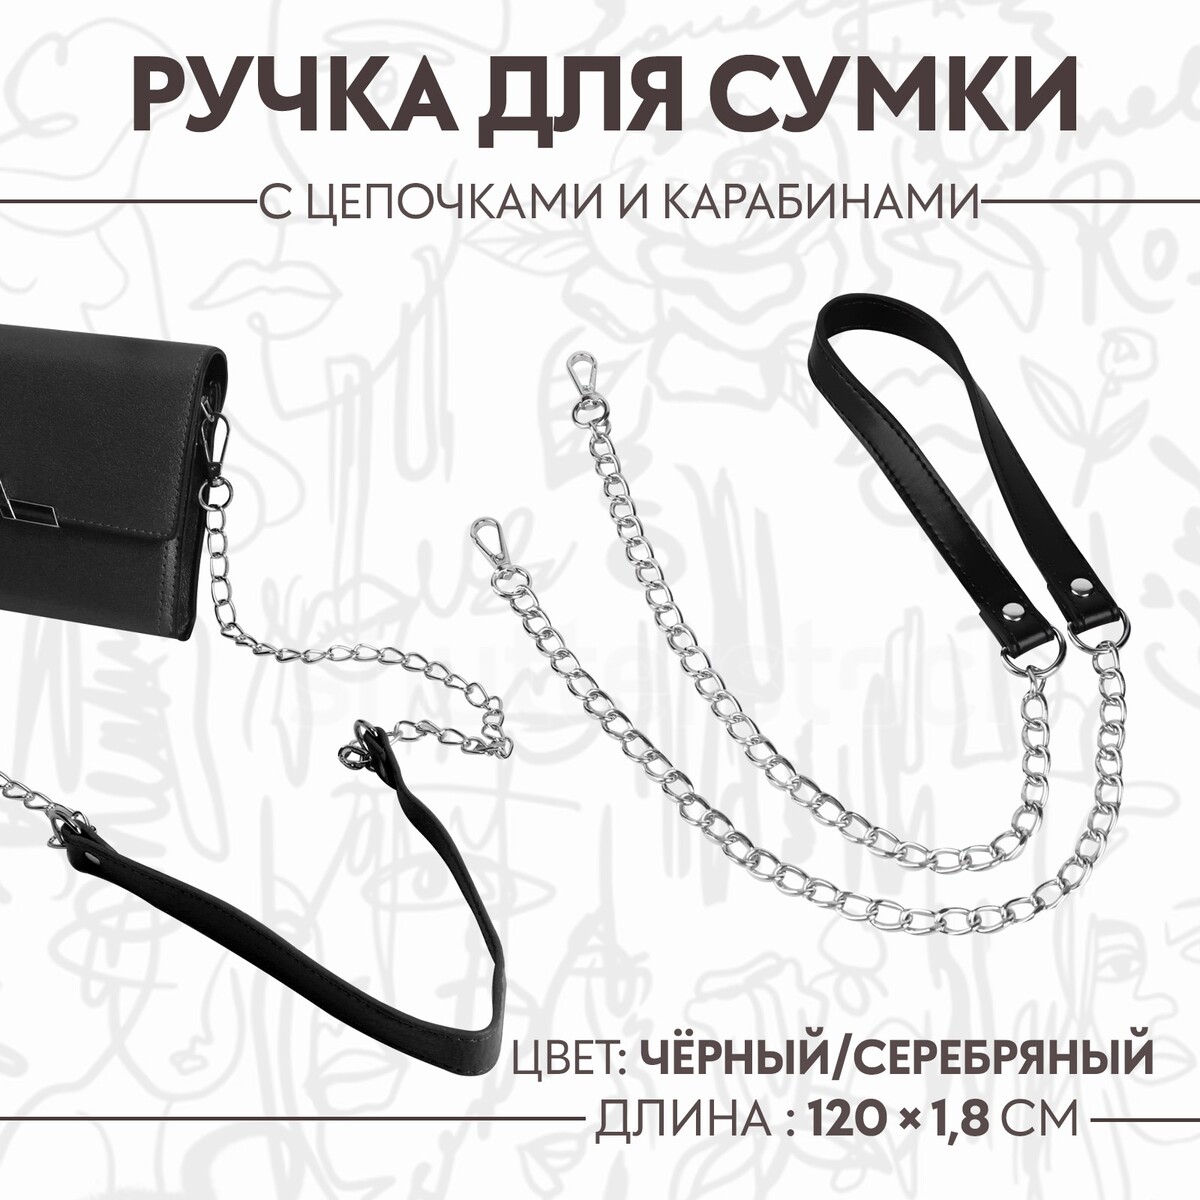 Ручка для сумки, с цепочками и карабинами, 120 × 1,8 см, цвет черный ручка для сумки с цепочками и карабинами 120 × 1 8 см бордовый